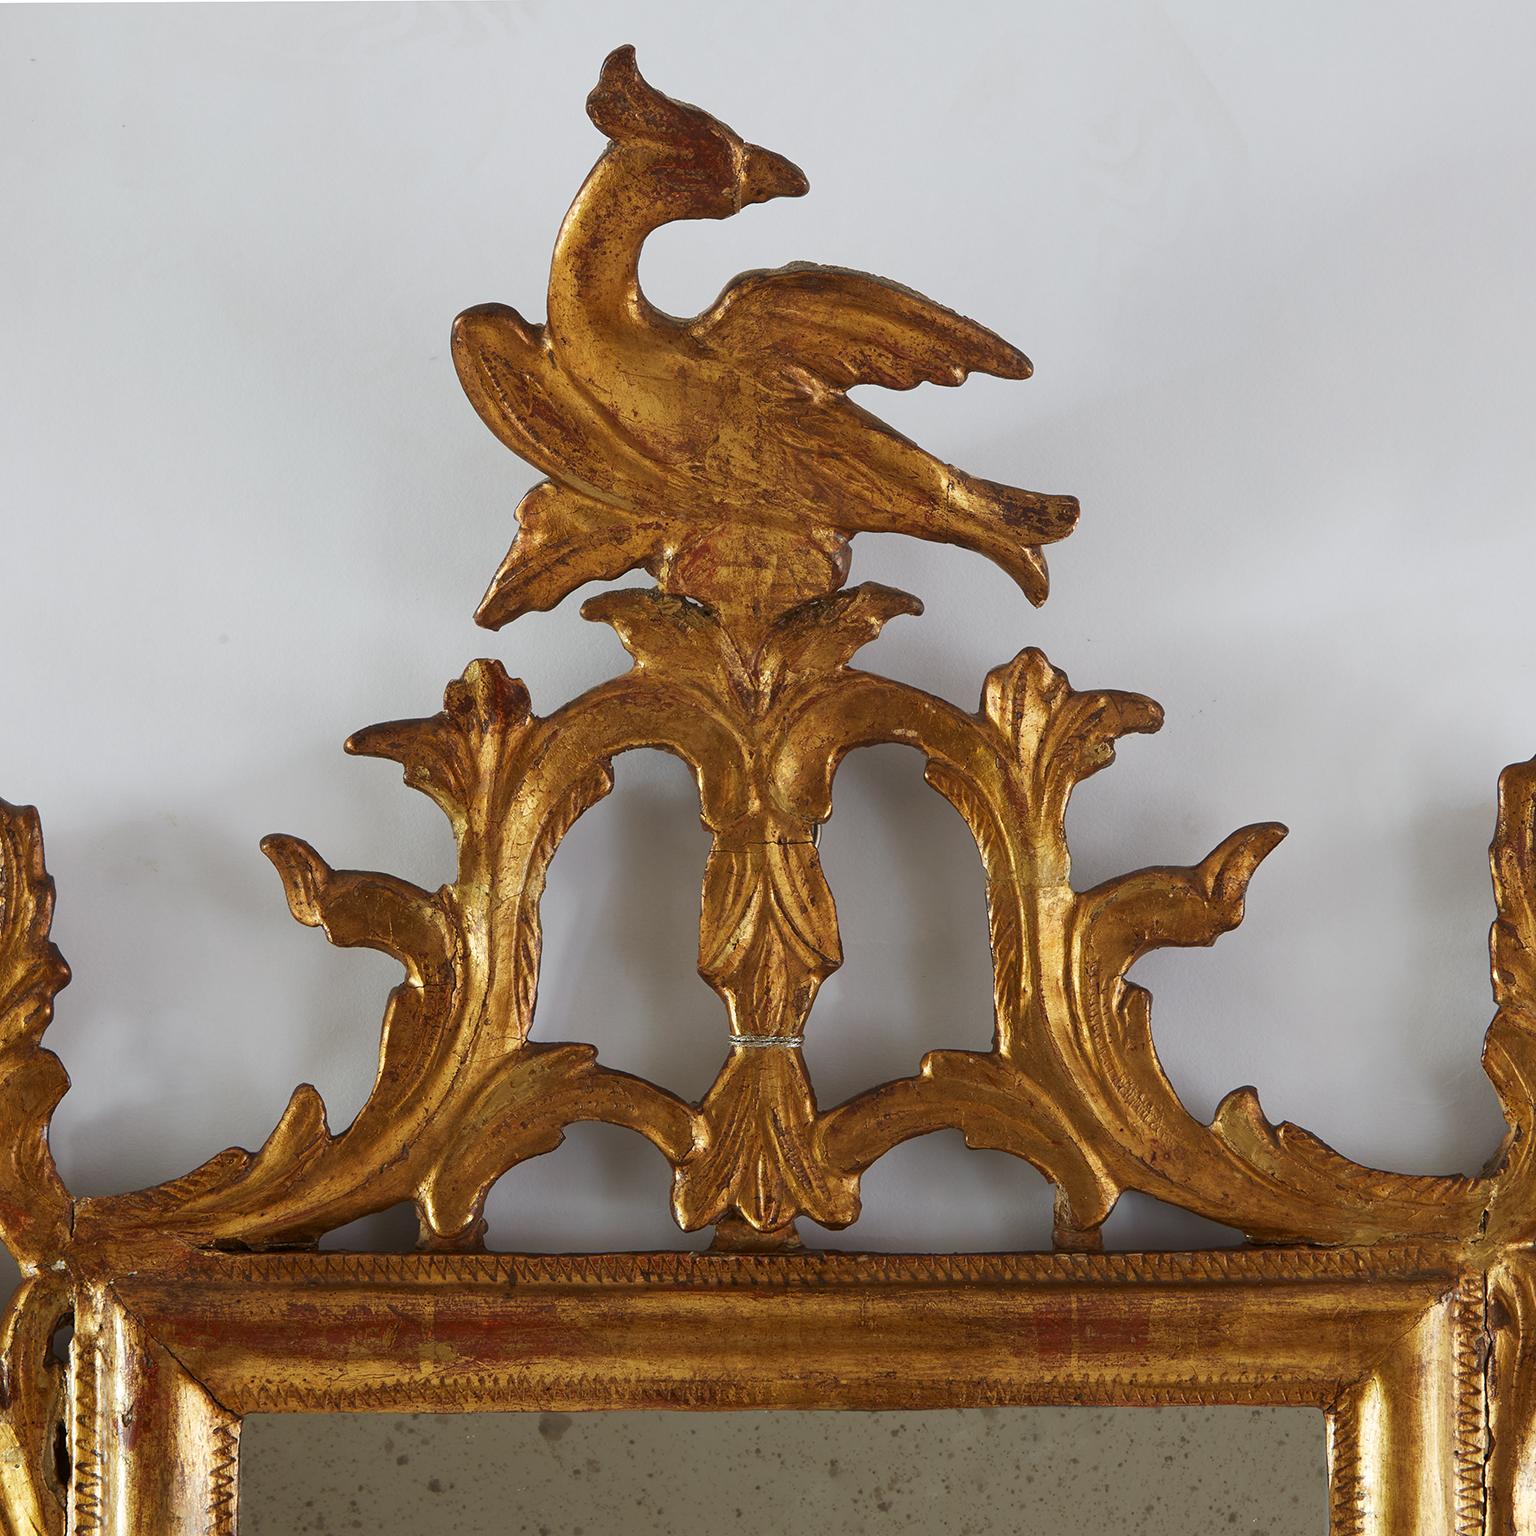 Coppia Di Specchi Dorati italiani di gusto Luigi XVI dell'inizio 1800 formati da una cornice di forma rettangolare con una sagoma semplice a mezzo toro decorata nei bordi da una zigrinatura. Nella cimasa vi sono decorazioni intagliate di racemi